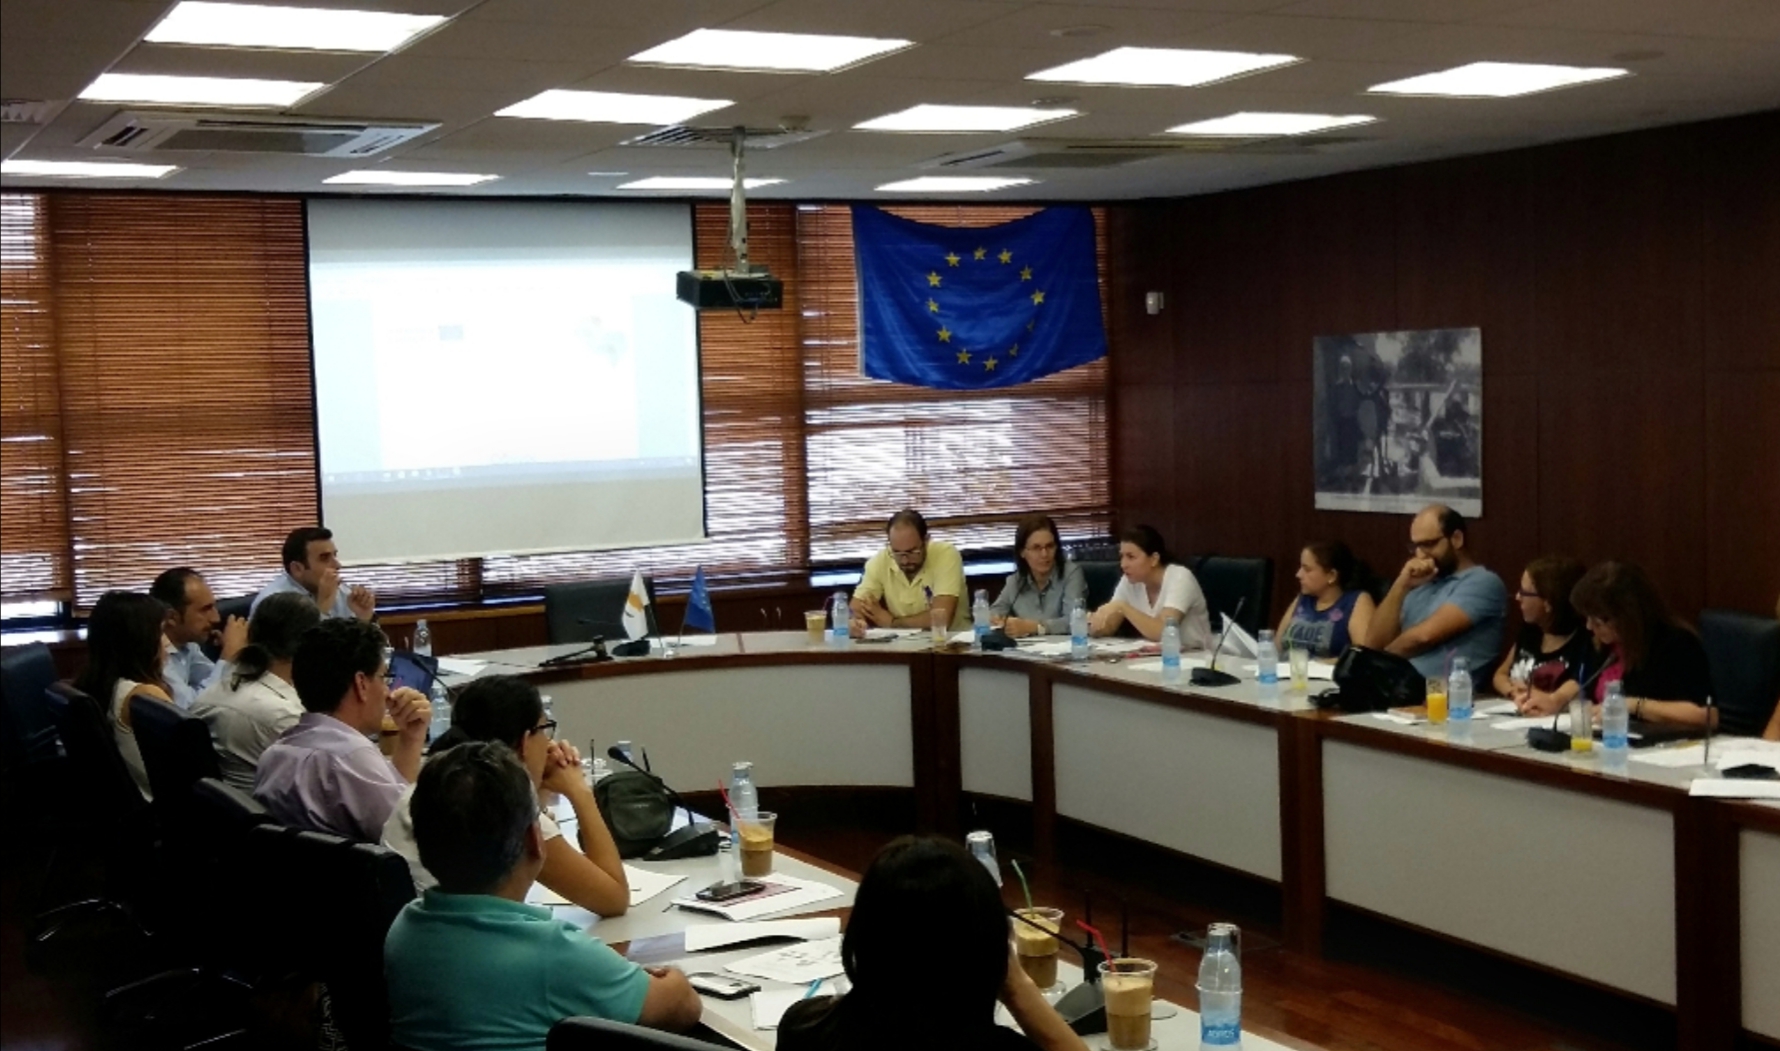 Stakeholders Group Meeting - Cyprus